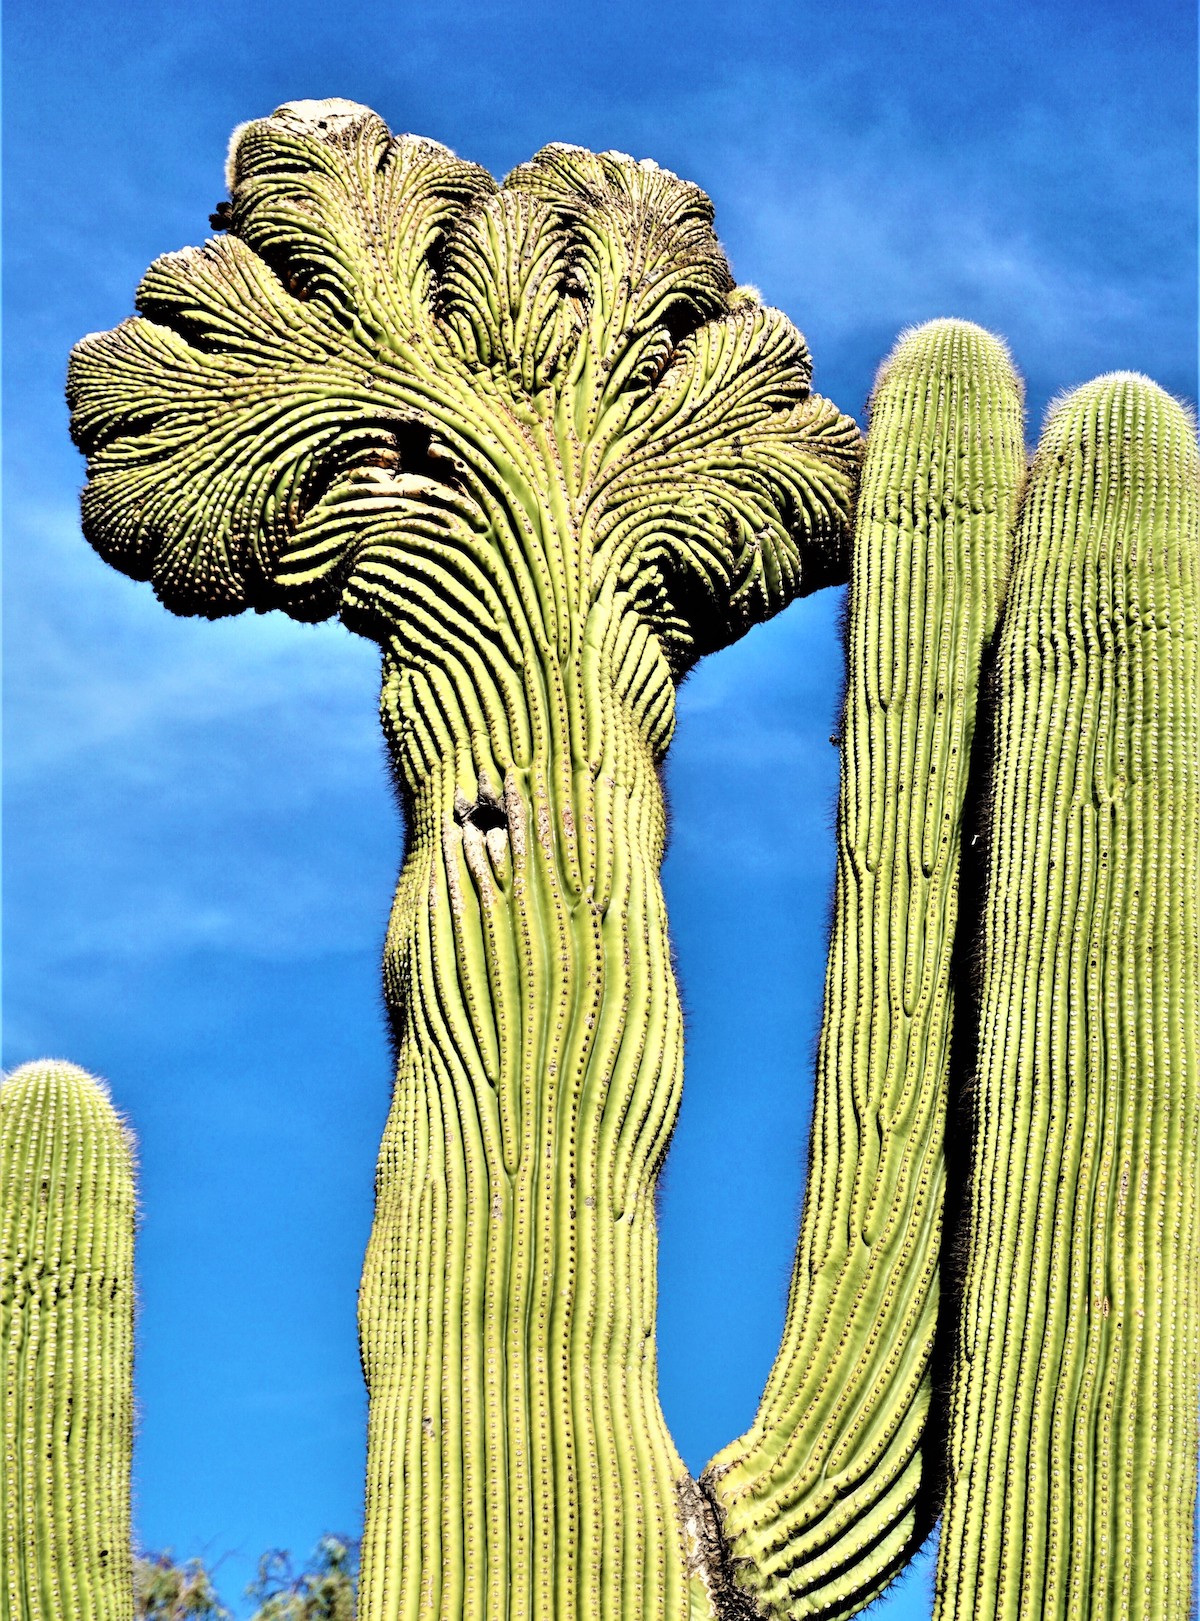 7 Lugares para encontrar el raro e inusual Crested Saguaro en Arizona - 217